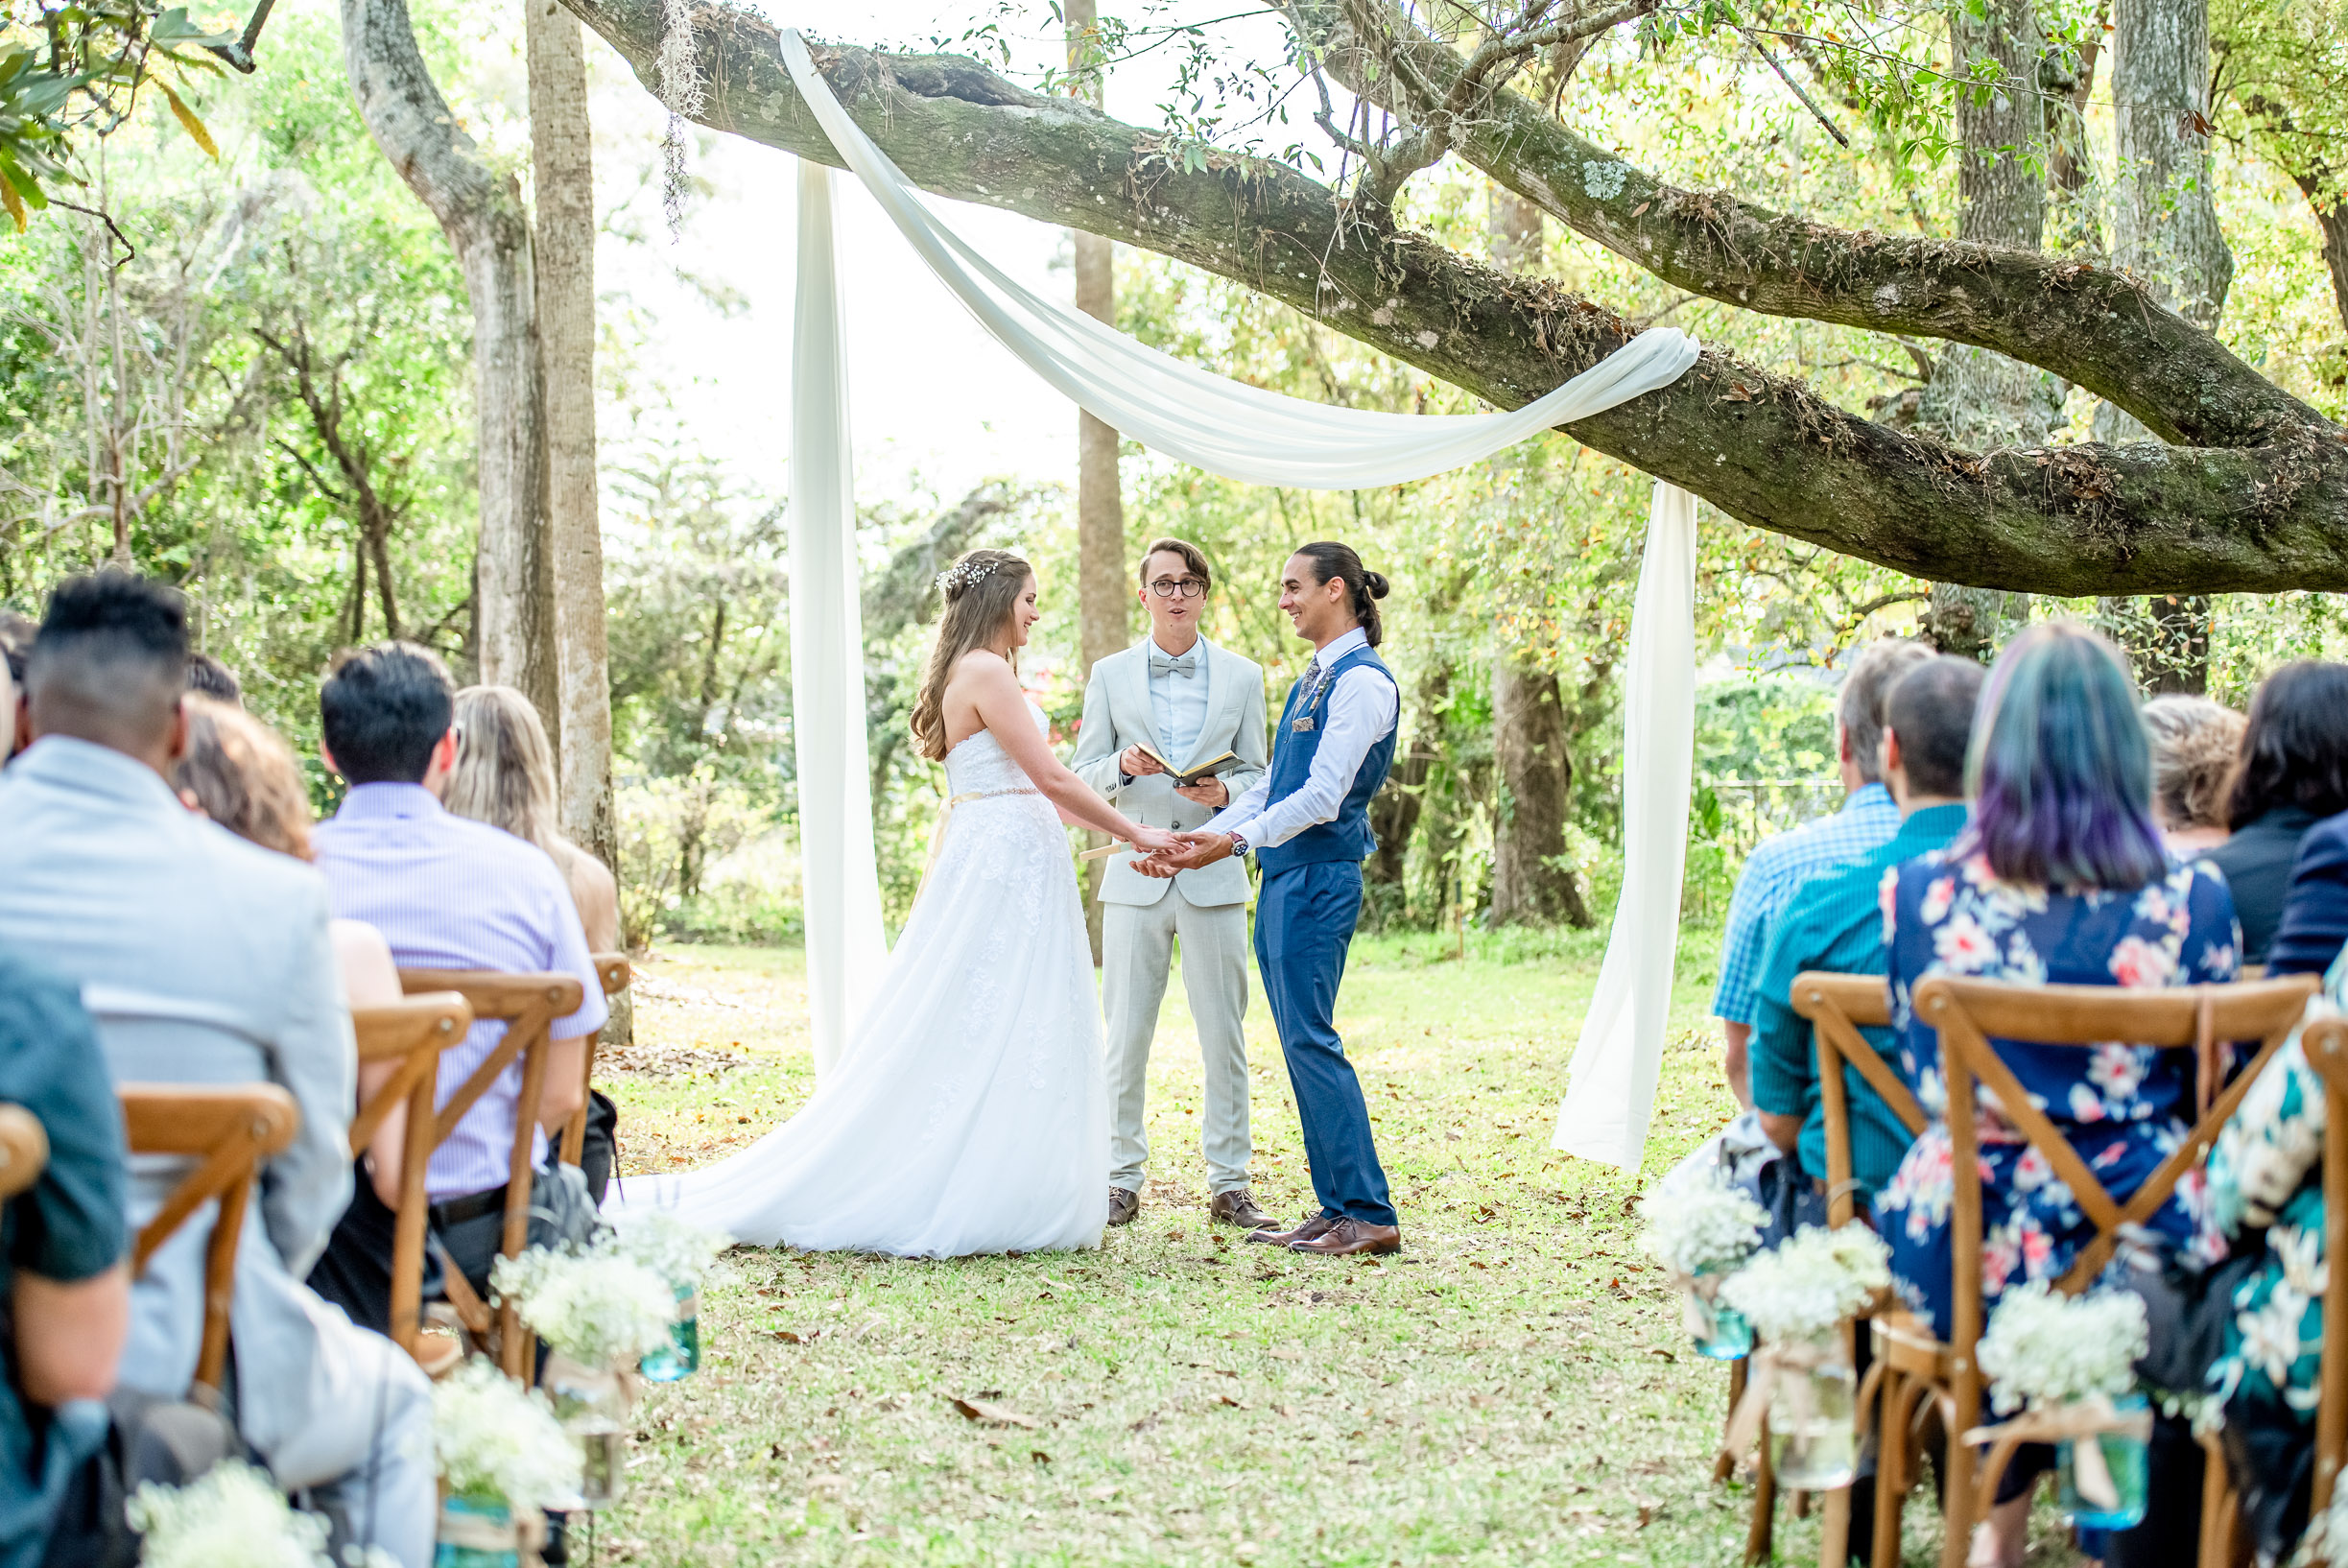 Outdoor Wedding Ceremony at The Garden Villa Venue in Orlando, FL